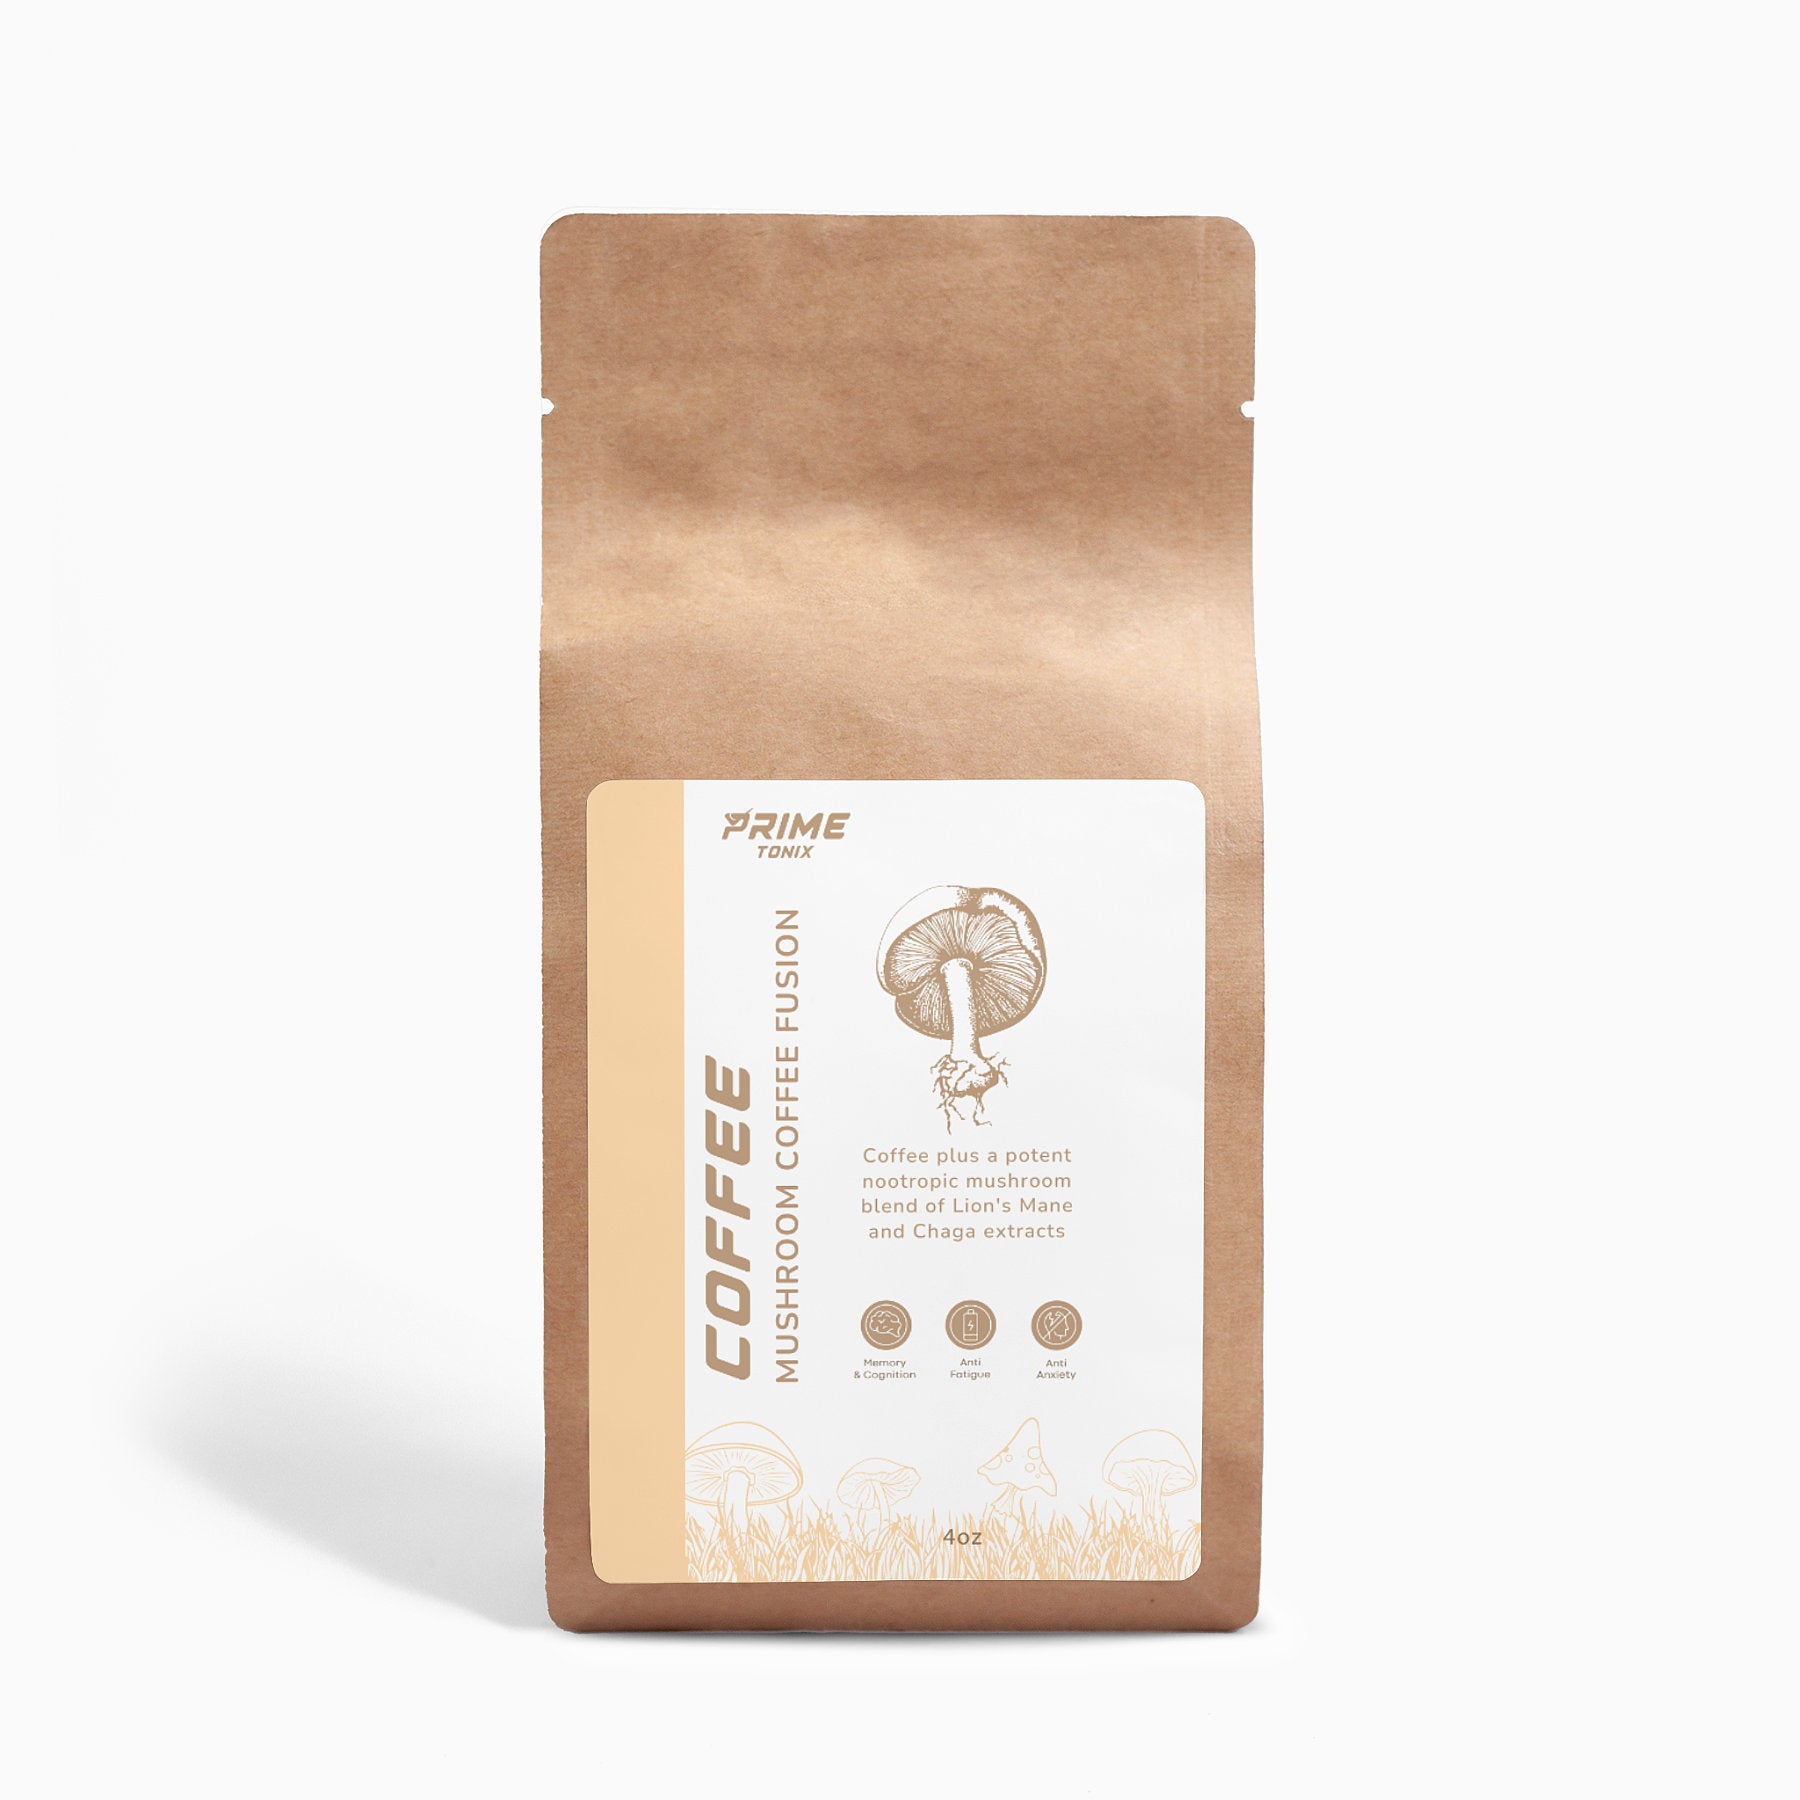 Prime Mushroom Coffee Fusion - Lion’s Mane & Chaga 4oz